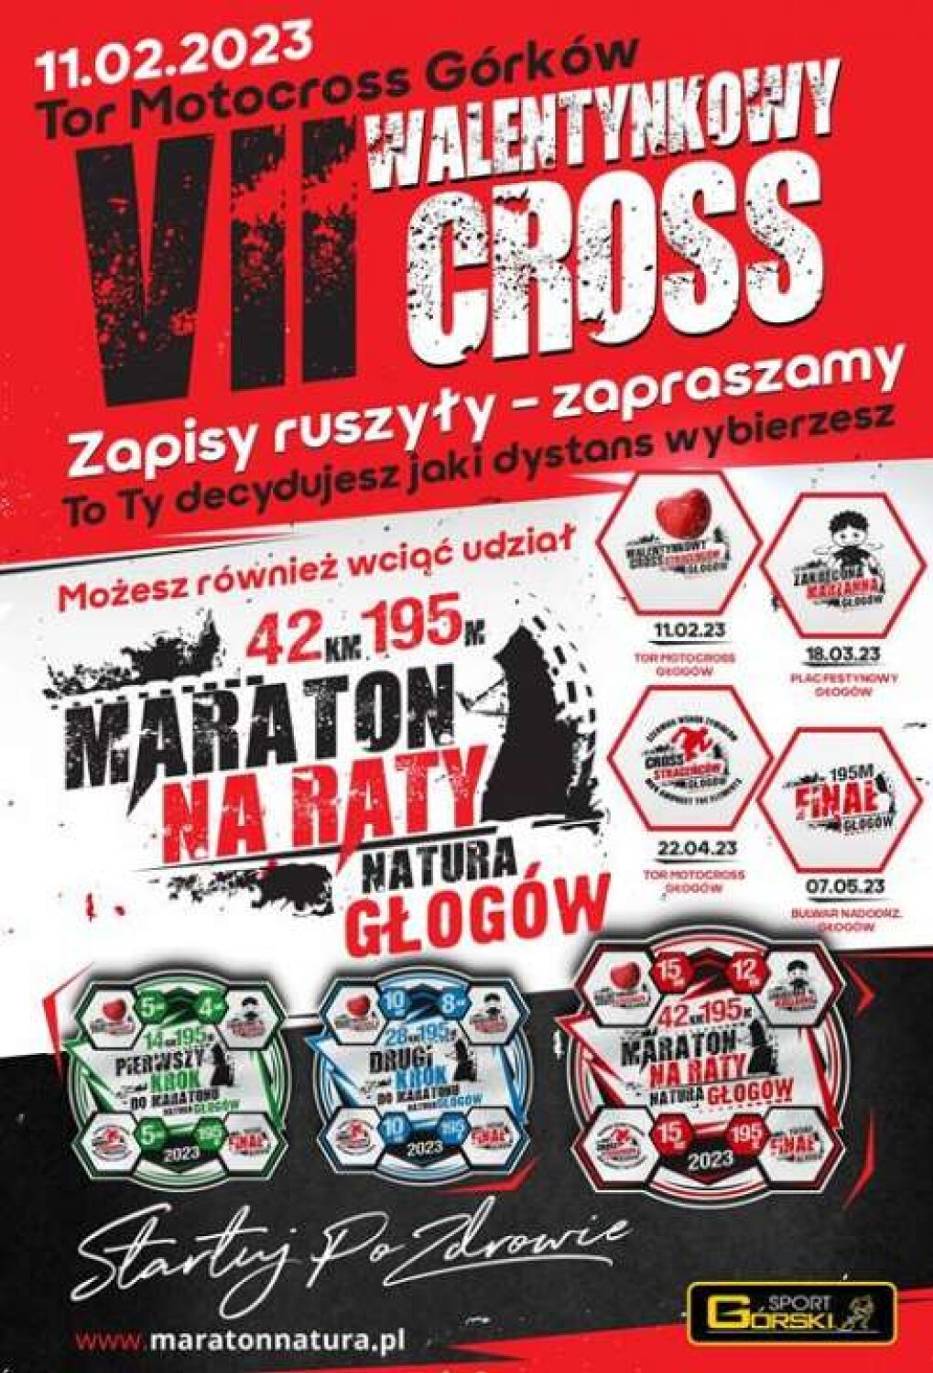 W Głogowie maraton z Jerzym Górskim pobiegniesz... na raty!